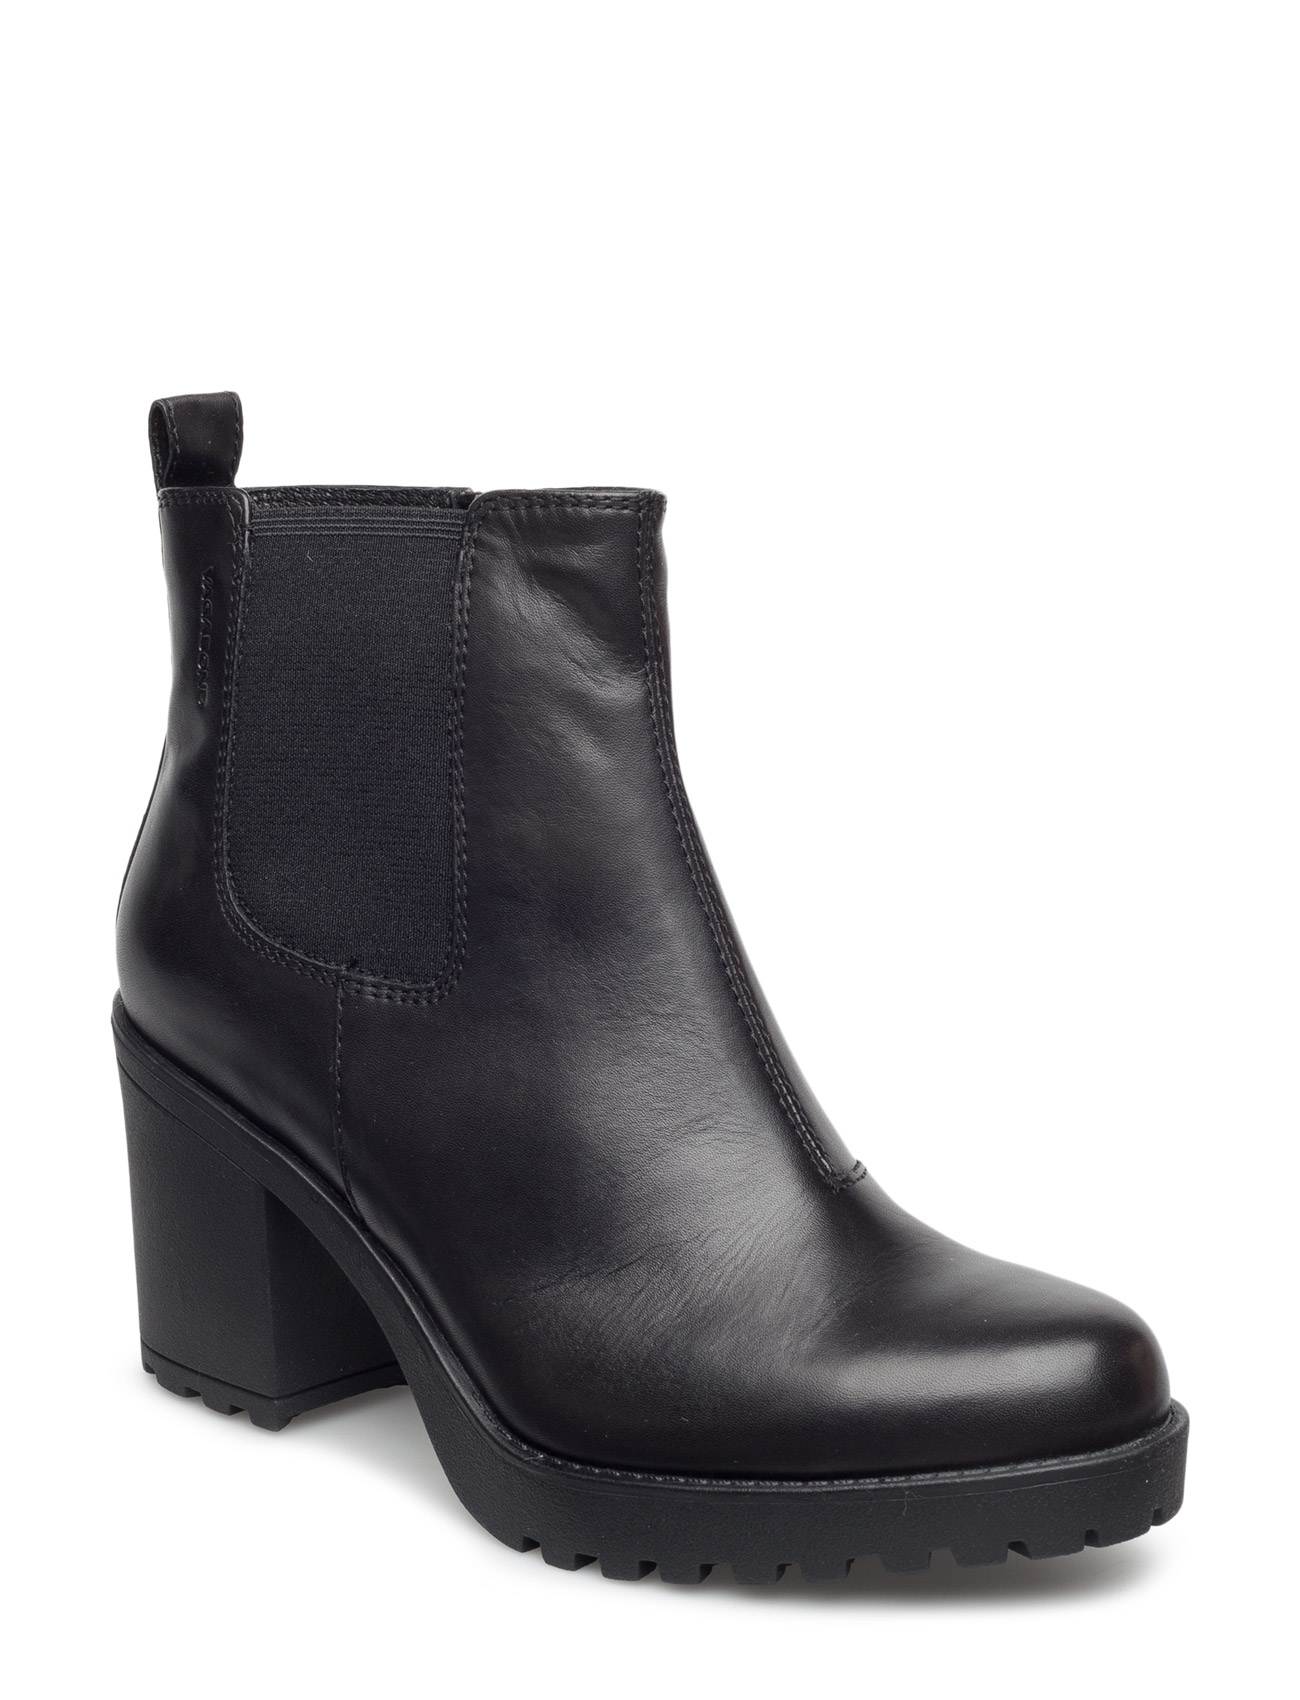 kromatisk fugtighed Tremble VAGABOND Grace - Heeled ankle boots | Boozt.com